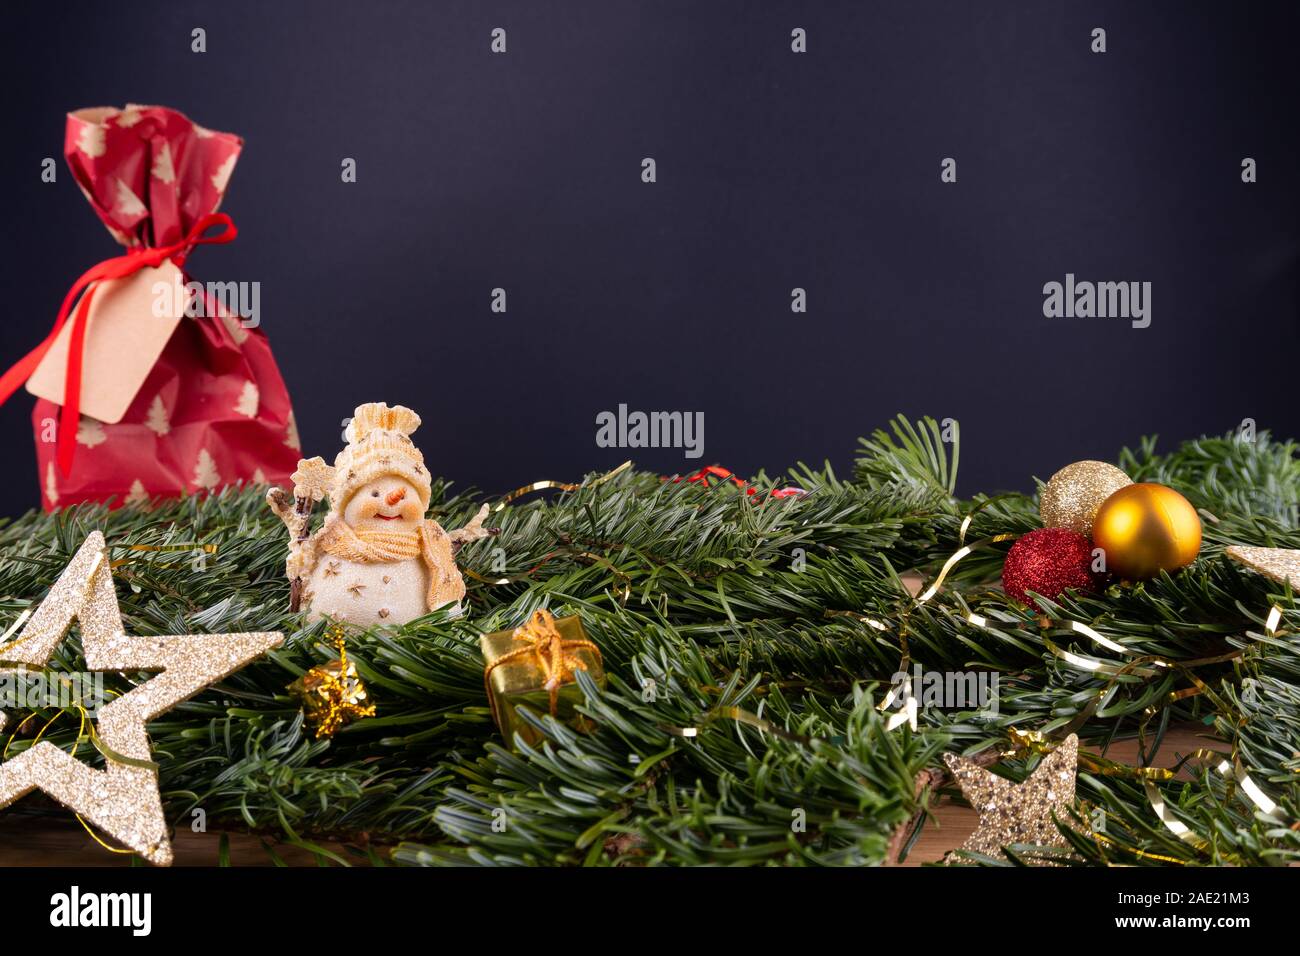 Weihnachtsdekoration (Schneemann, Gegenwart, Sterne, Kugeln) und fir Zweige vor einem schwarzen Hintergrund Stockfoto